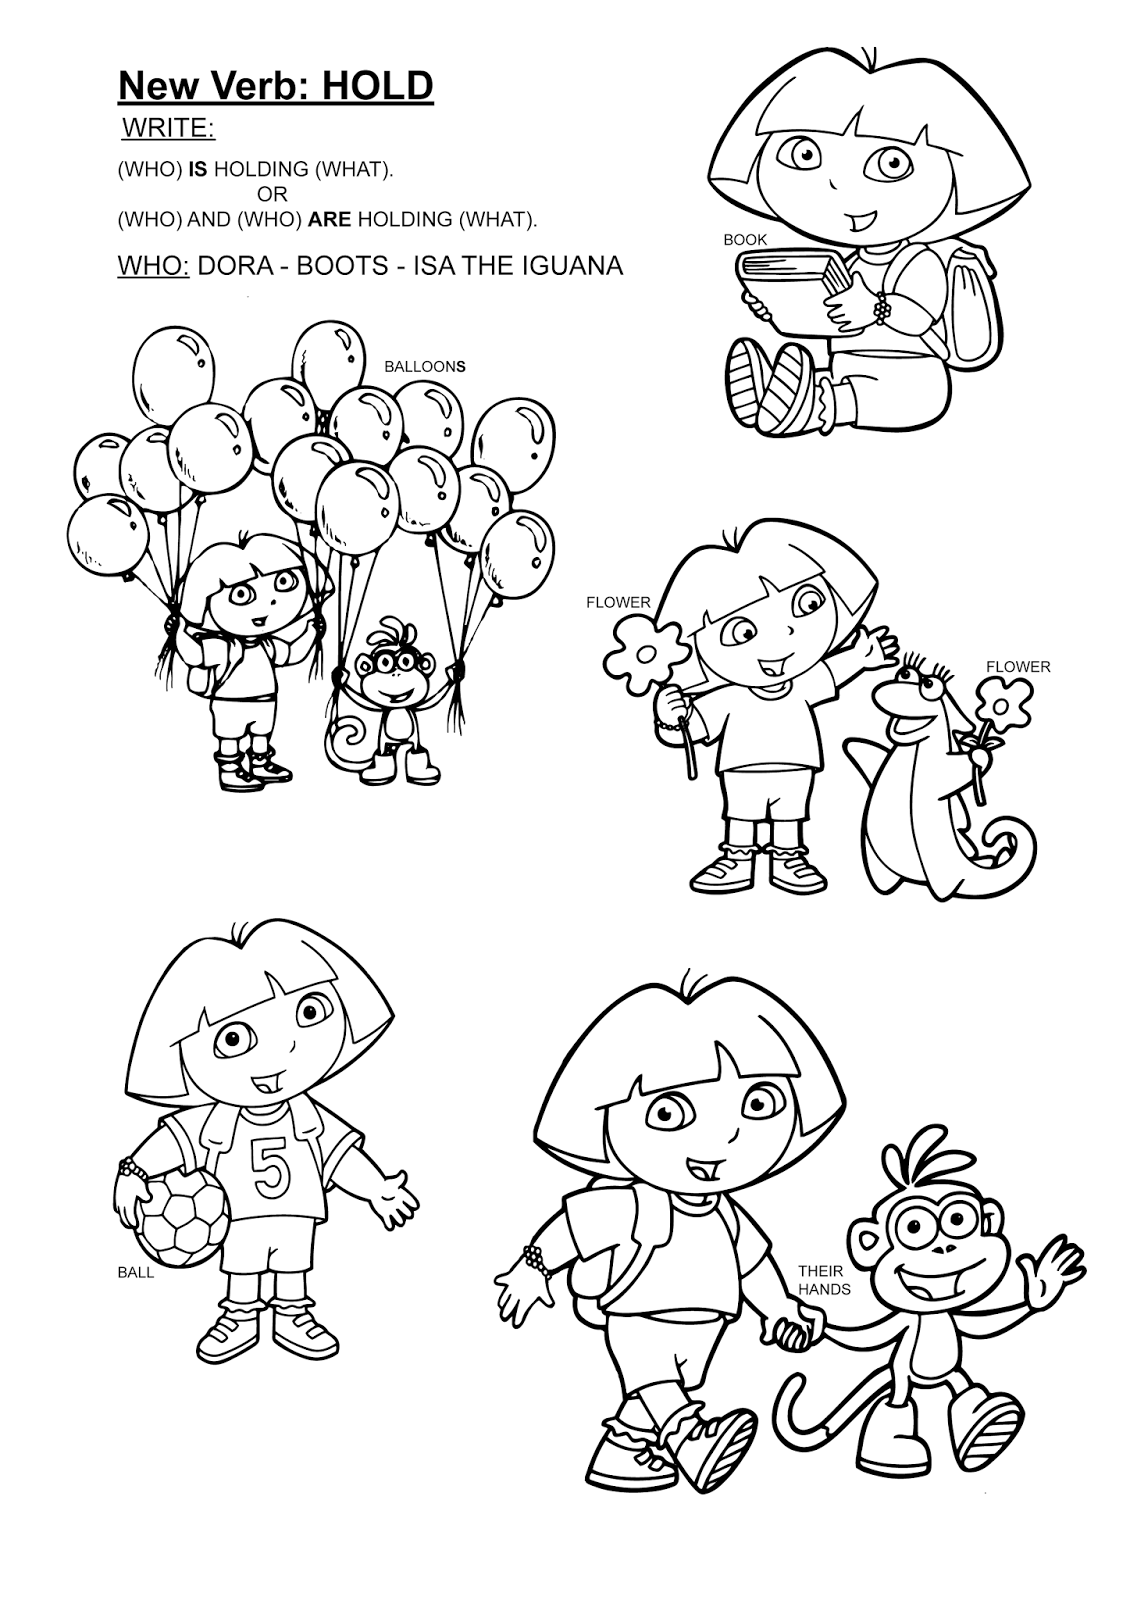 Páginas para colorear originales Original coloring pages: 'Hold' starring  Dora the Explorer